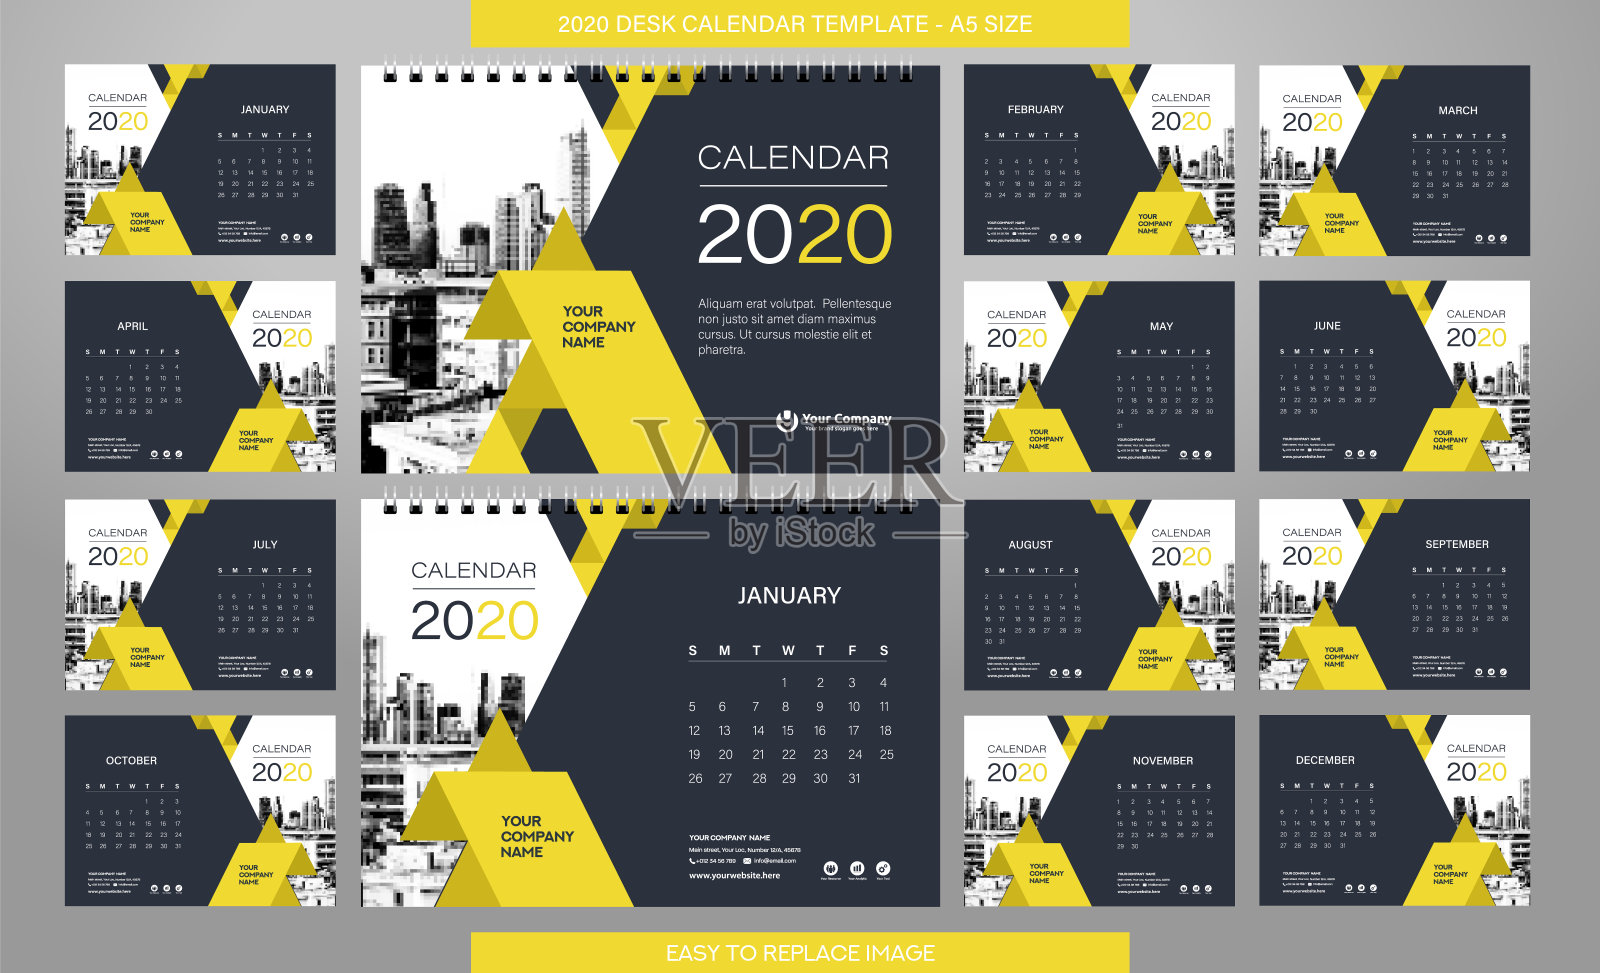 桌面日历2020模板- 12个月包括- A5大小设计模板素材